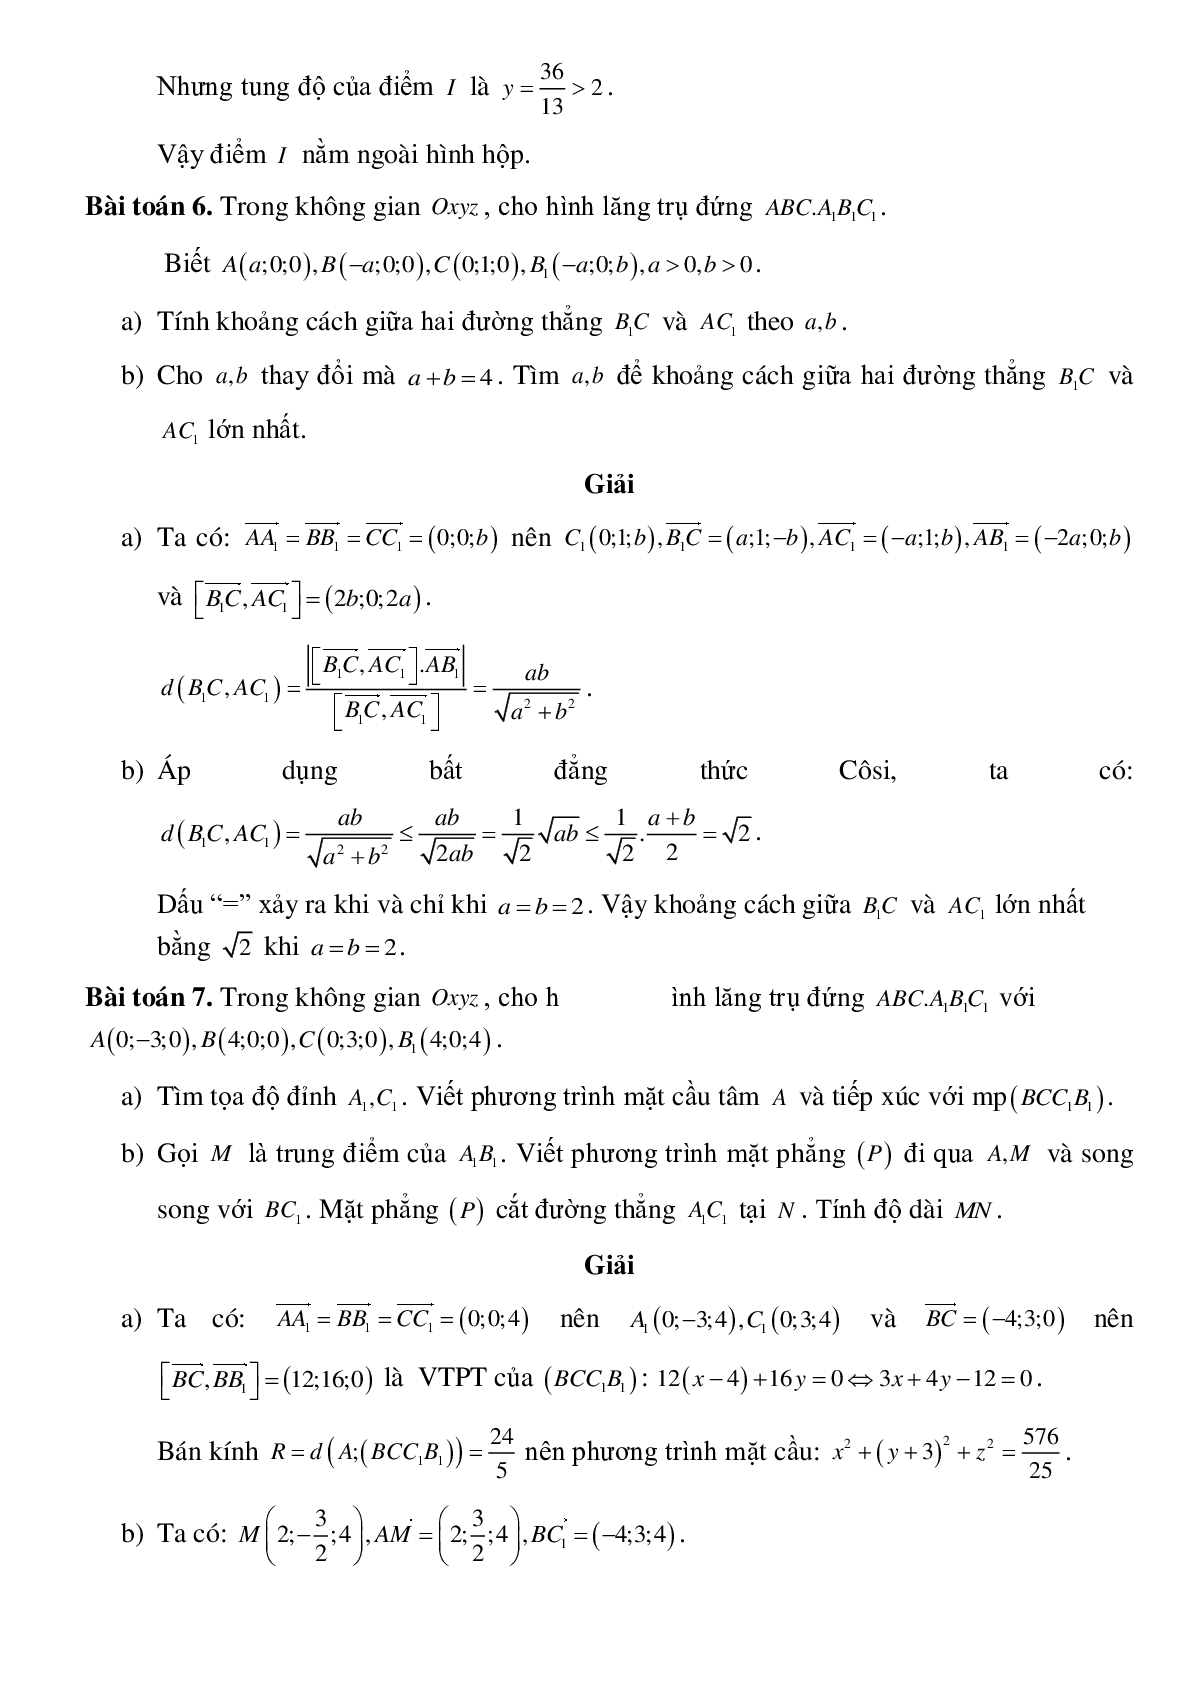 Ứng dụng phương pháp tọa độ trong các hình không gian (trang 6)